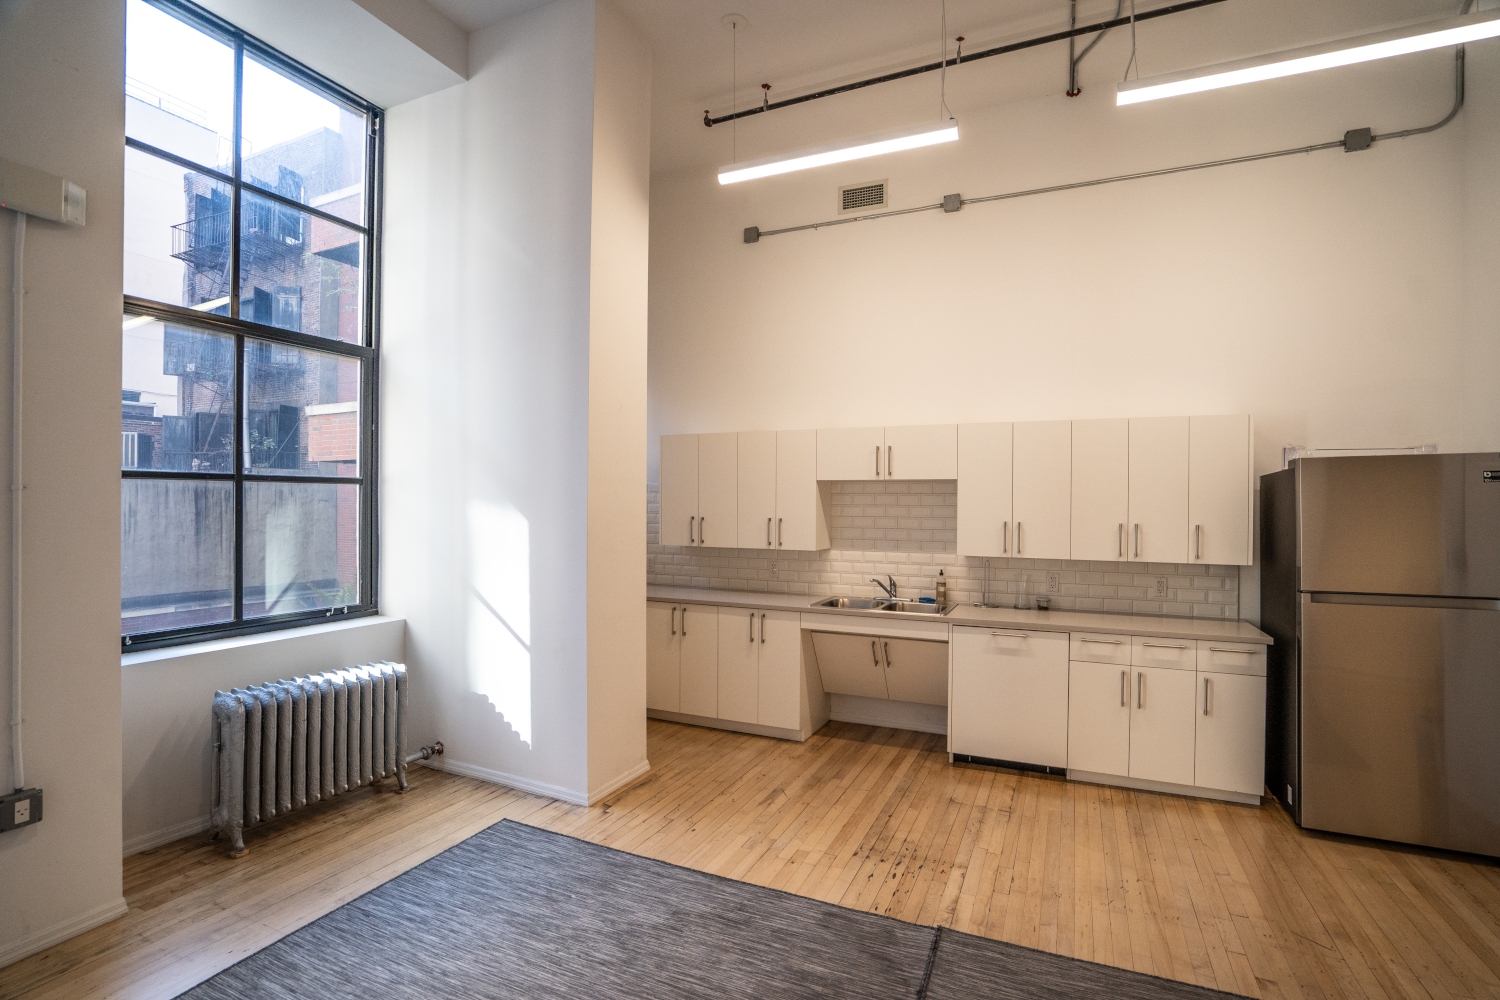 Modern kitchen cabinets with sleek design in a Manhattan apartment